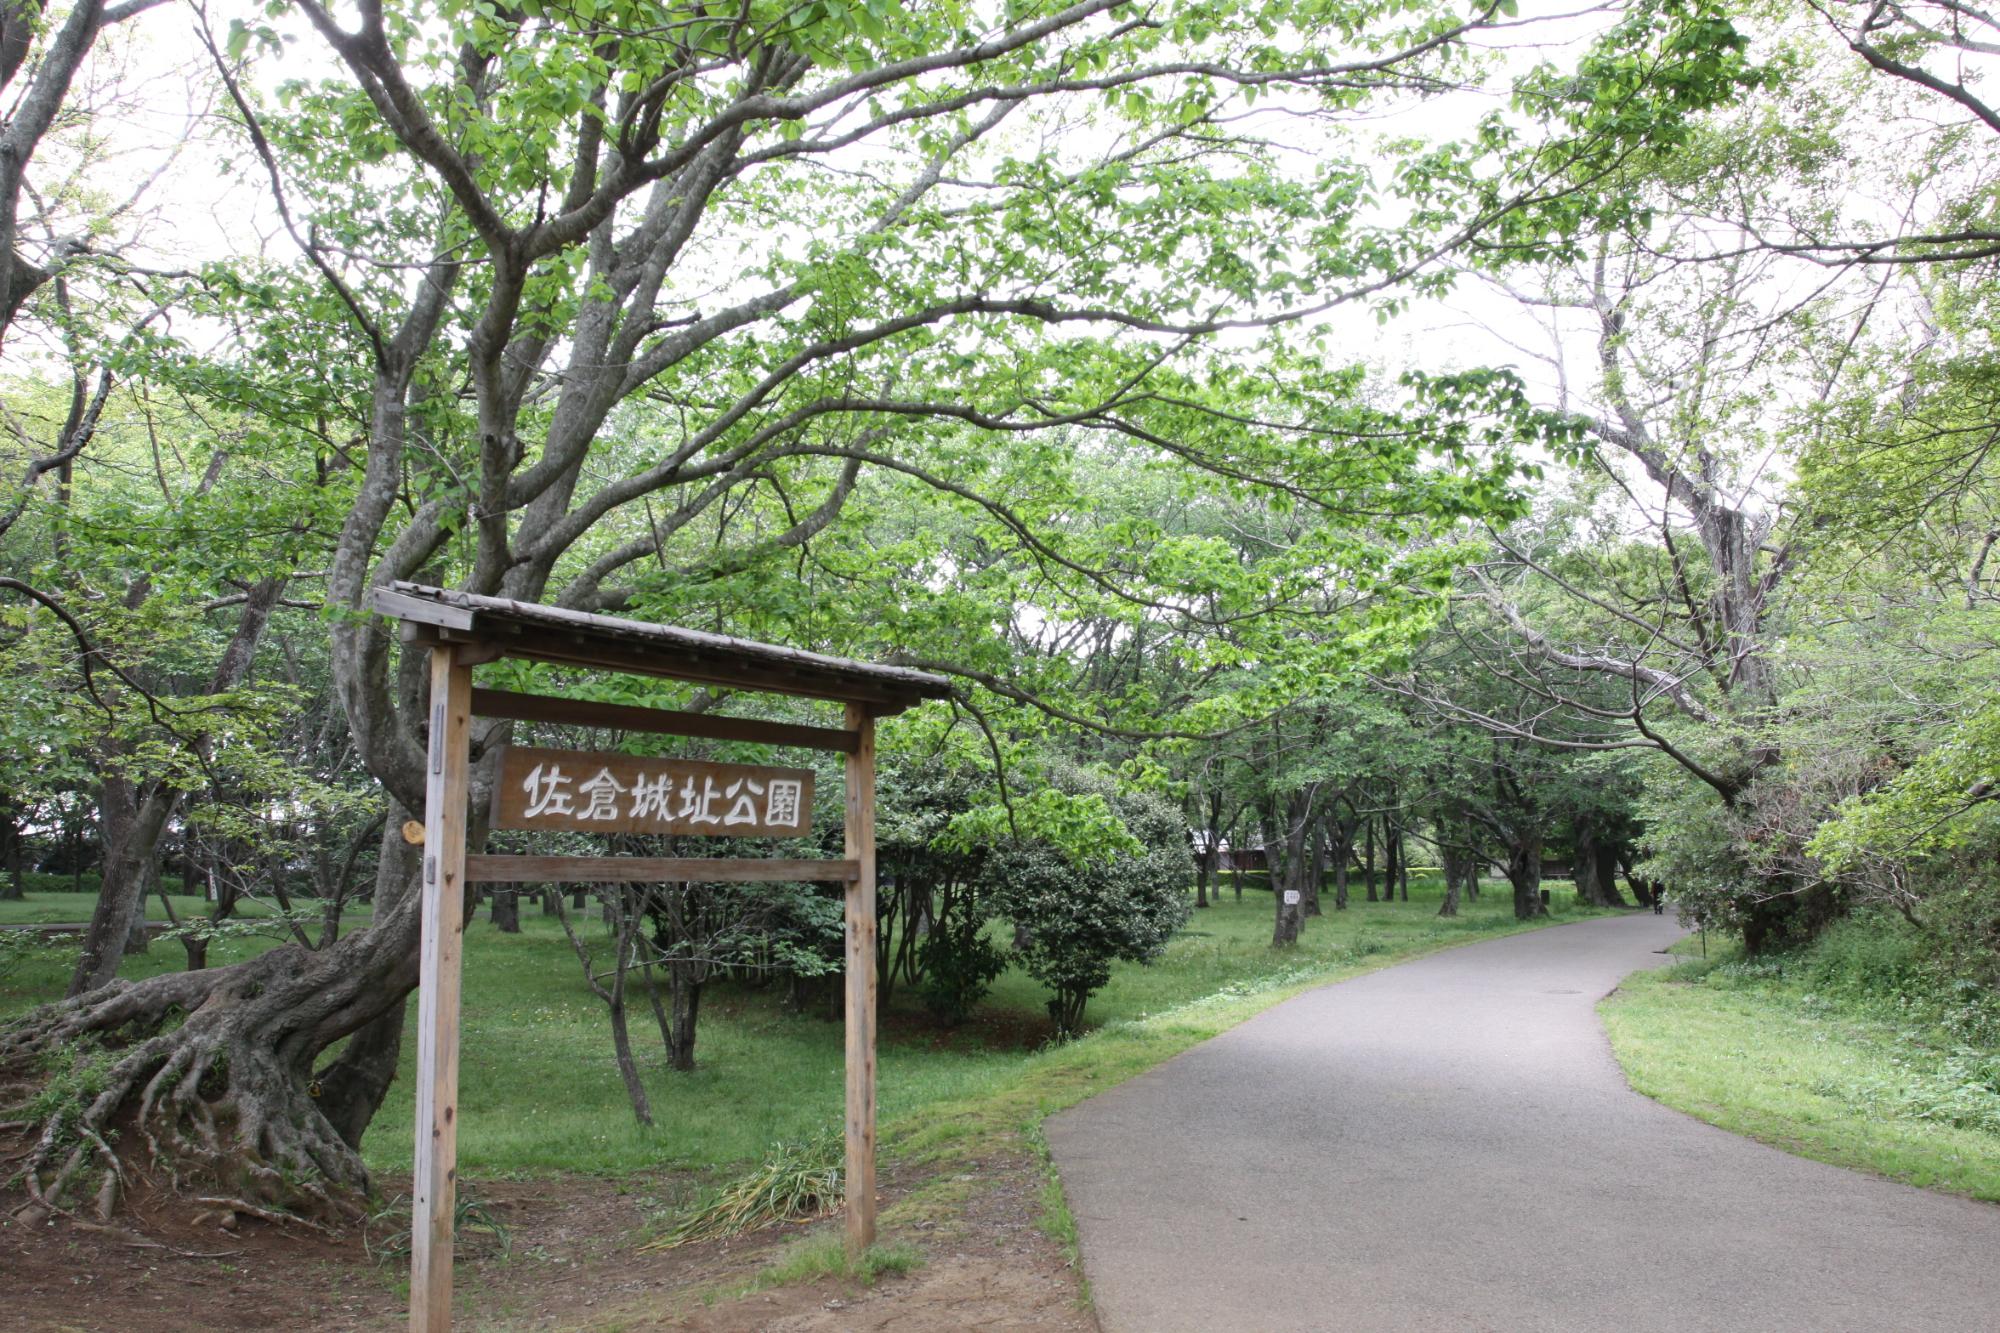 入口に設置された佐倉城址公園とかかれた案内板と公園内の写真